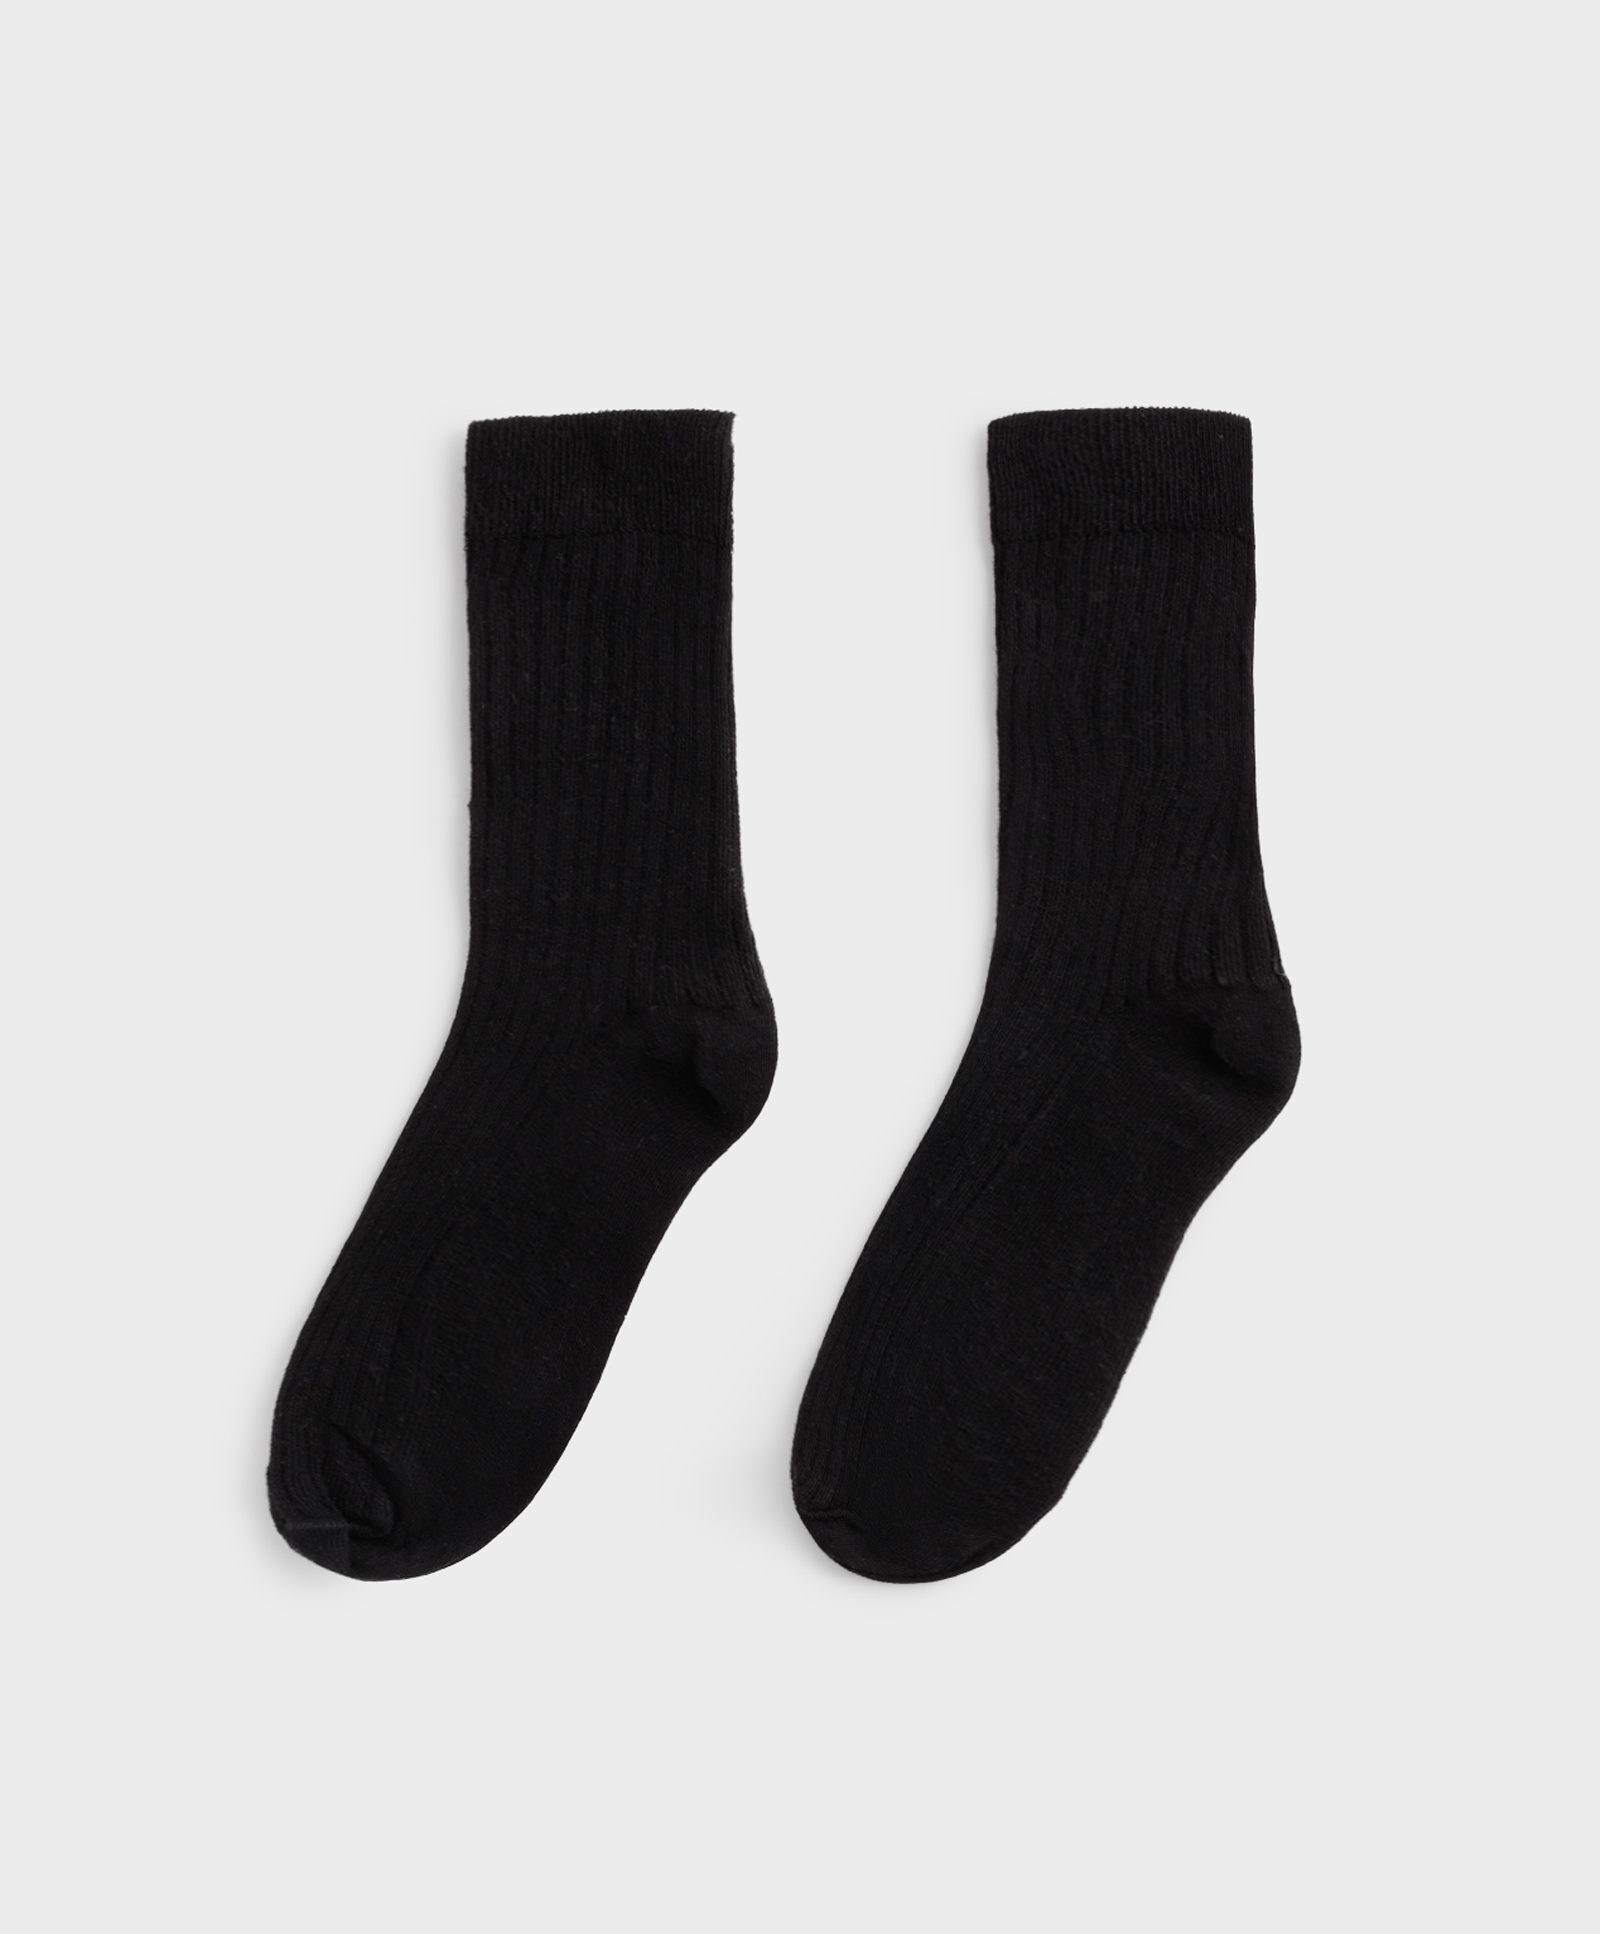 Halfhoge sokken van katoenen ribstof